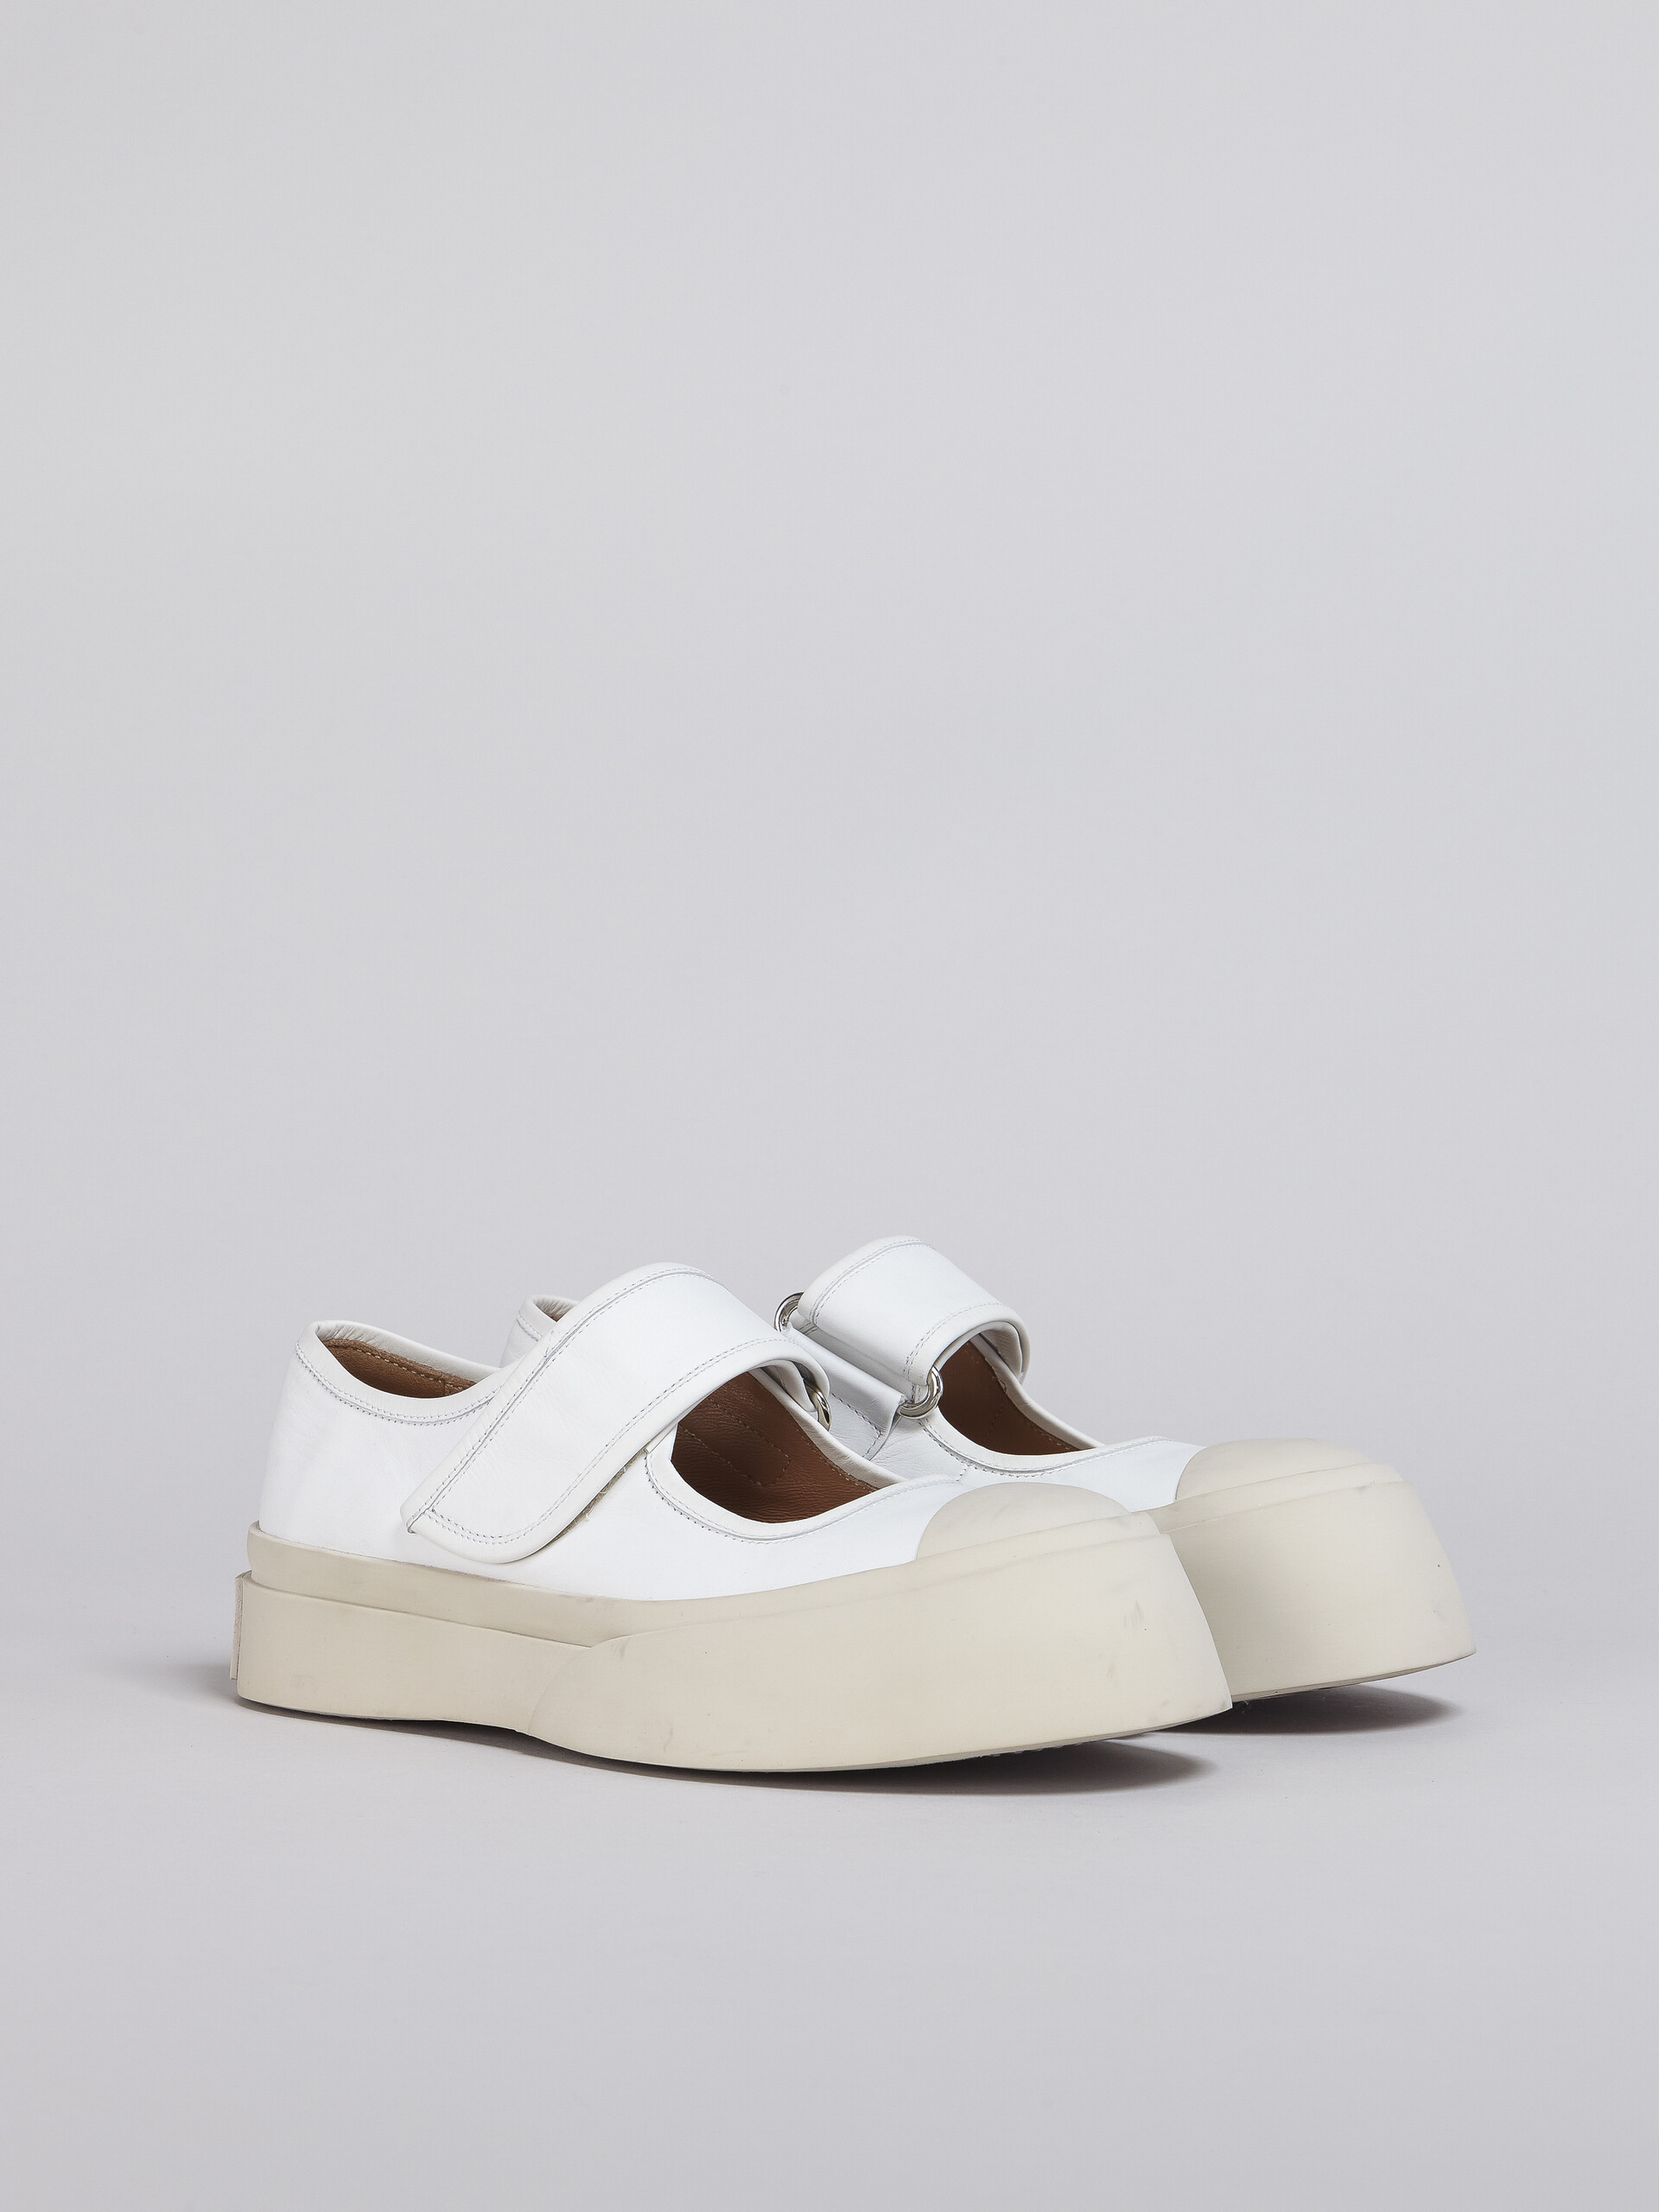 Zapatilla Mary Jane de nappa blanca - Sneakers - Image 2